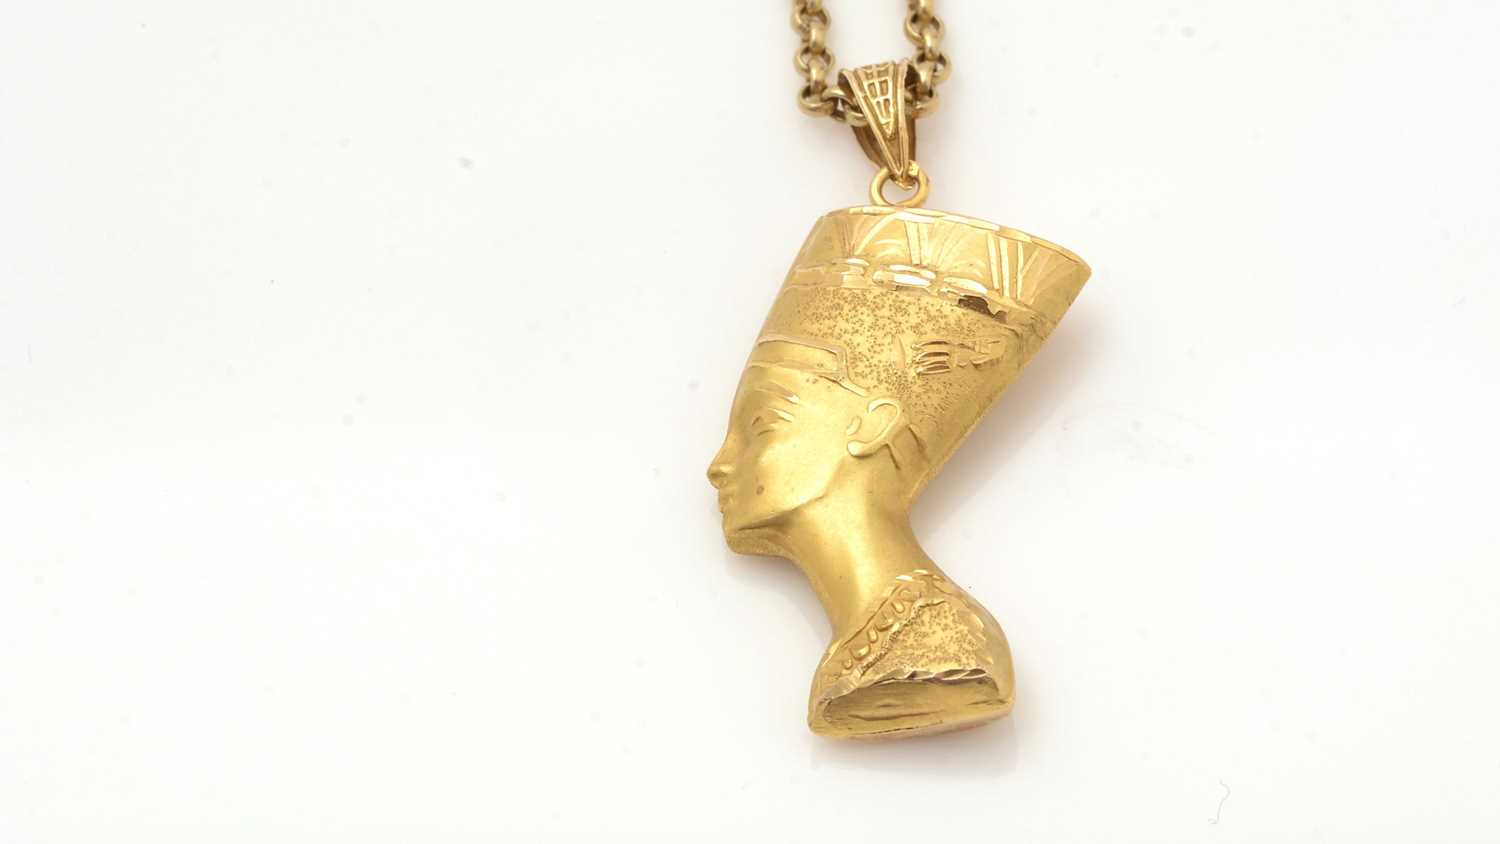 A gold Queen Nefertiti pendant on chain